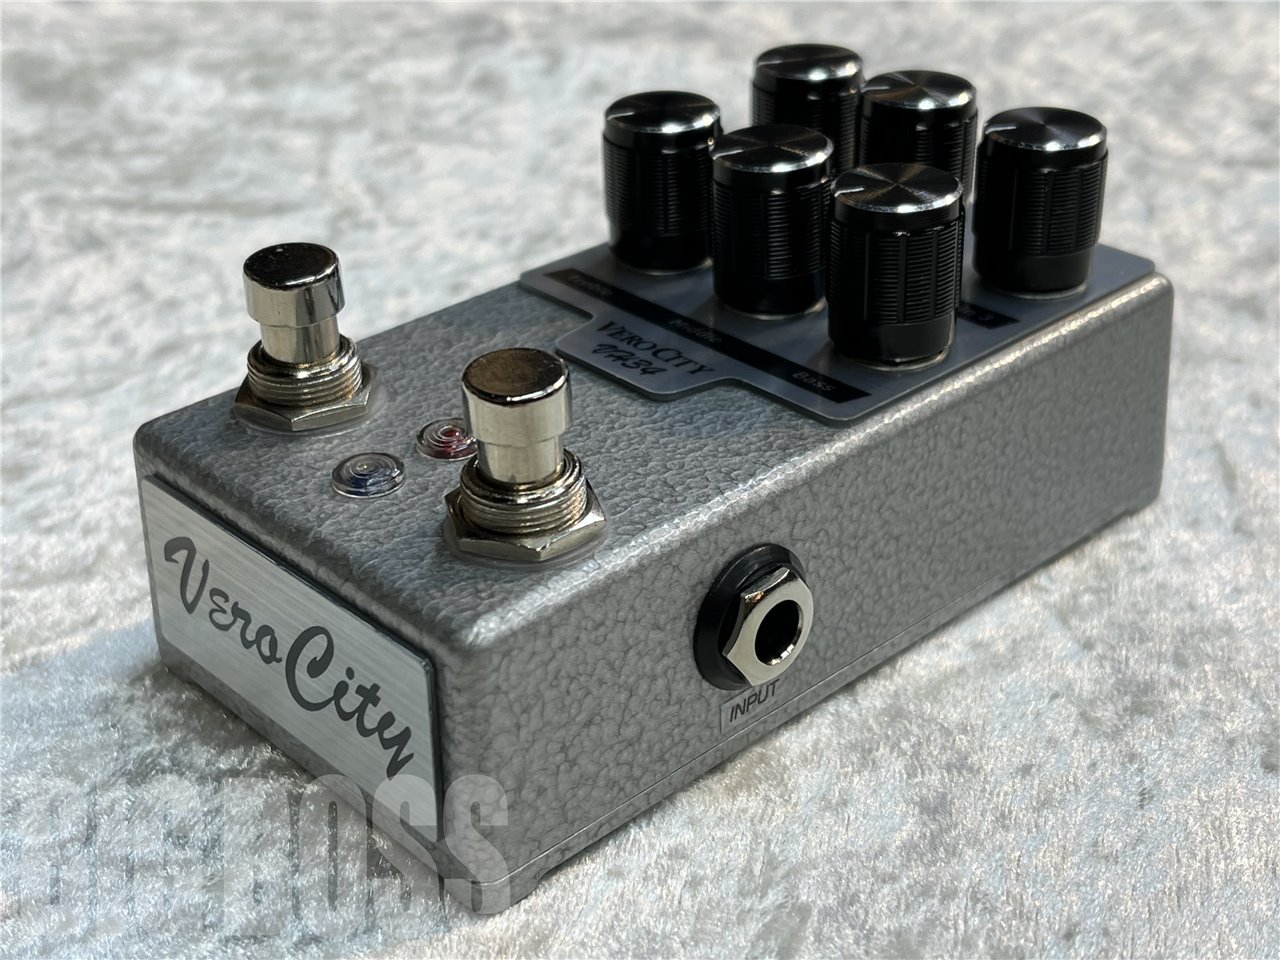 送料無料 Verocity effects pedals VH34 - ギター